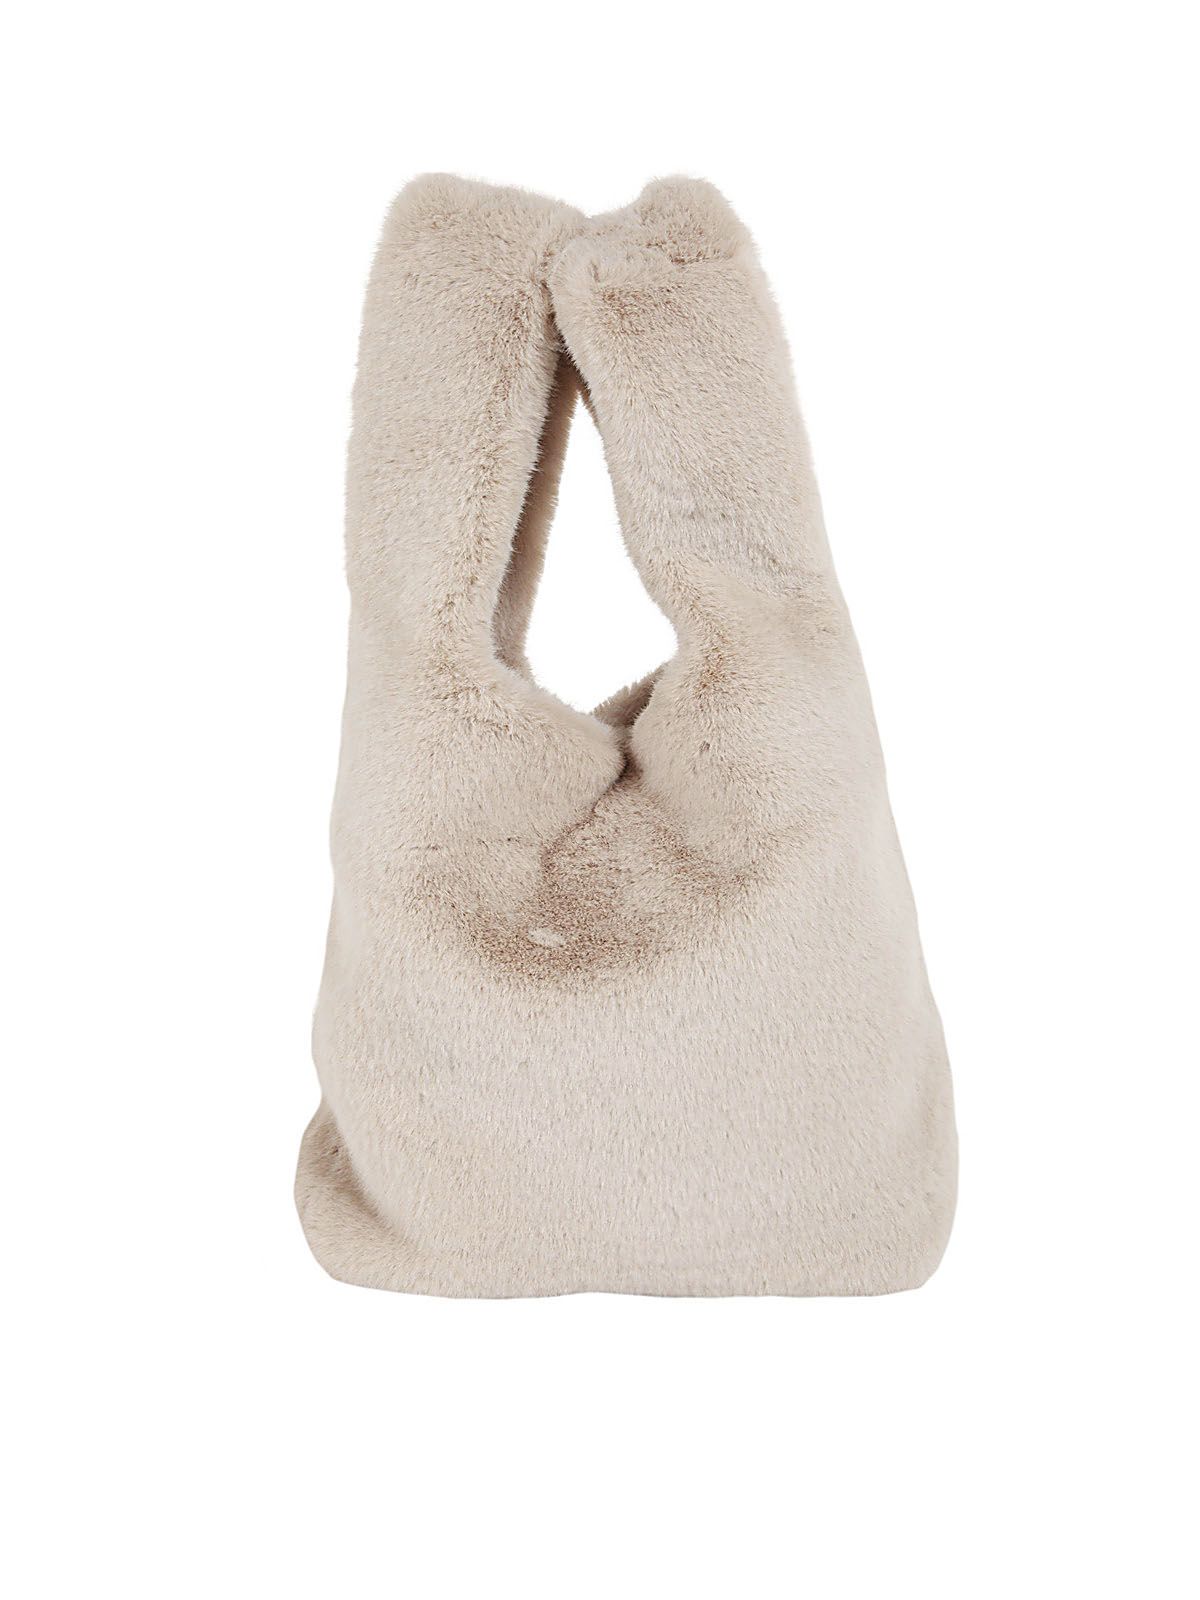 Stand Studio Market Fur Bag Faux Fur Soft Lush In Ecru